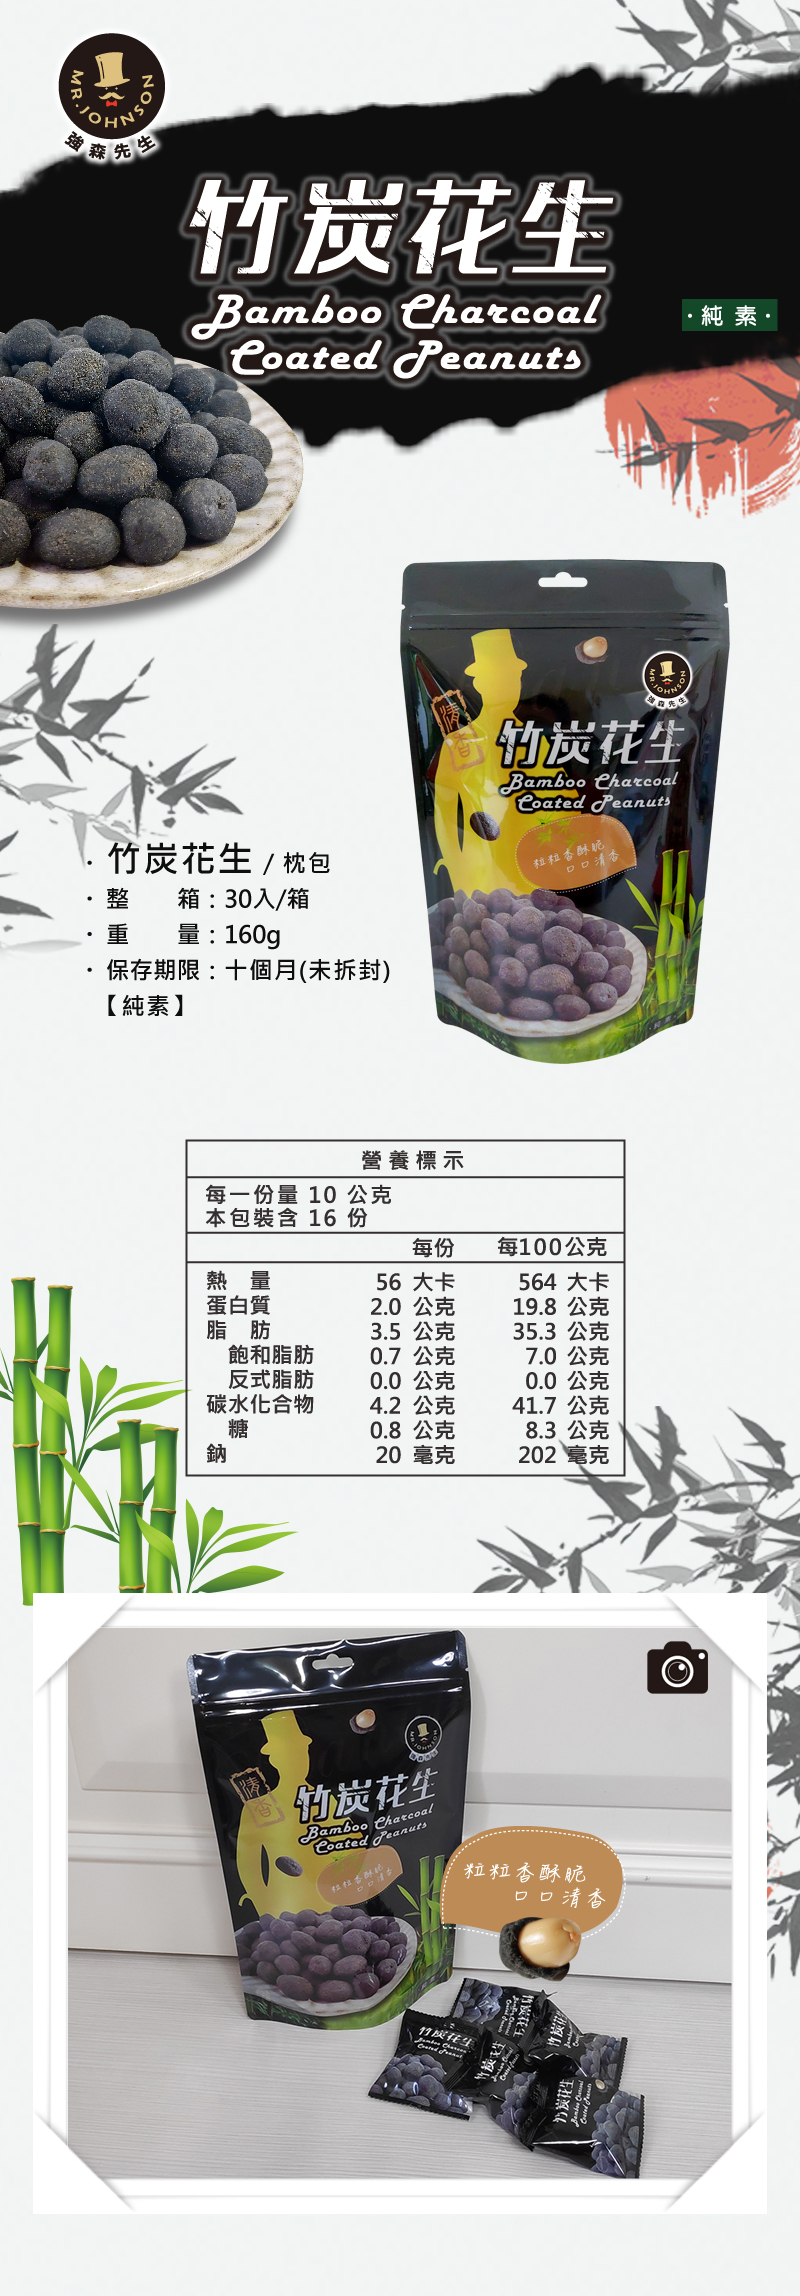 竹炭花生的原料是取自於台灣竹山地區的「孟宗竹」，
其味道清香甘甜、獨具風味。在竹製作的過程中是以極高溫的傳統窯燒將孟宗竹製成可食用的粉末結合麵粉中，
再裹和花生後即為香酥脆口，粒粒飽滿的竹炭花生，是富強森賣了十幾年的商品。